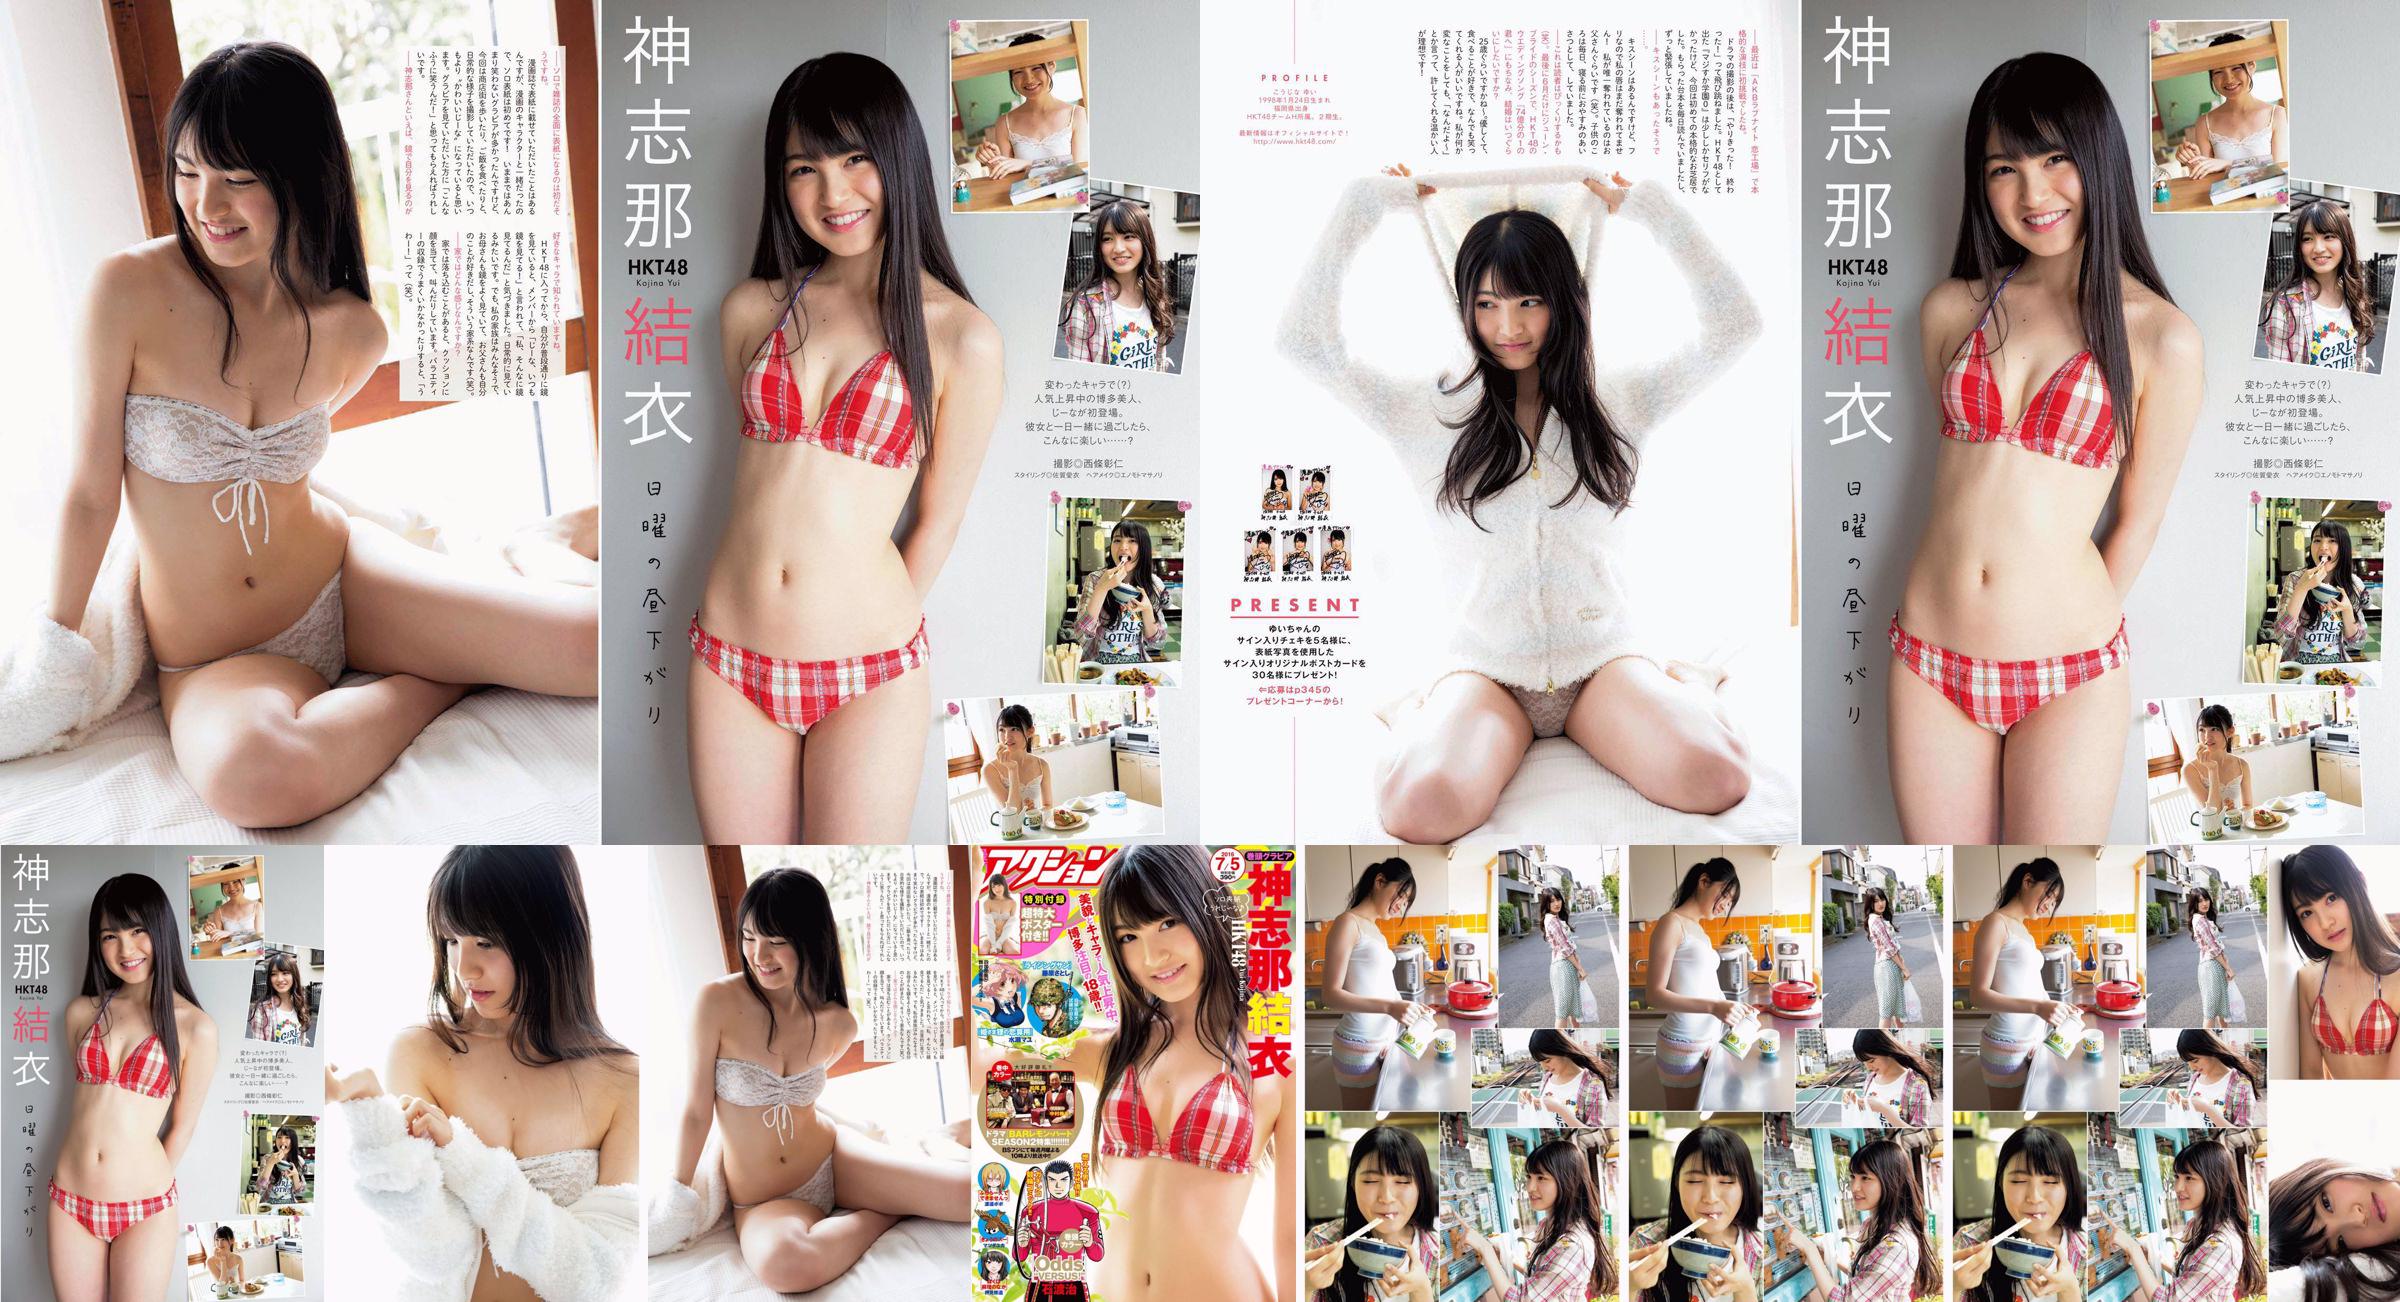 [Acción Manga] Shinshina Yui 2016 No.13 Photo Magazine No.c272f8 Página 2